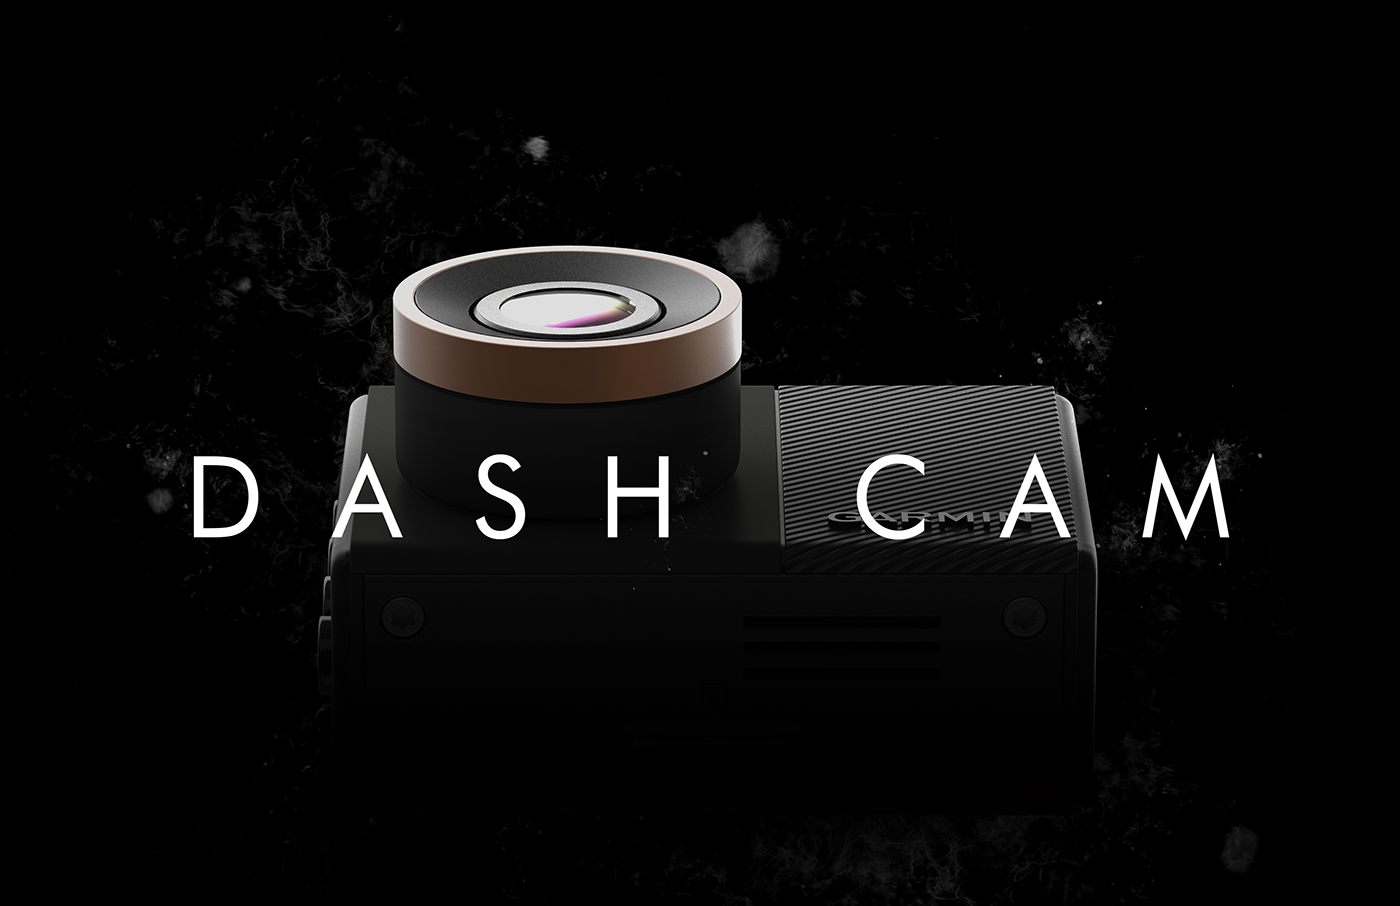 dashcam camera Garmin dashcam45 dashcam55 industrial design  texture Display mount safety